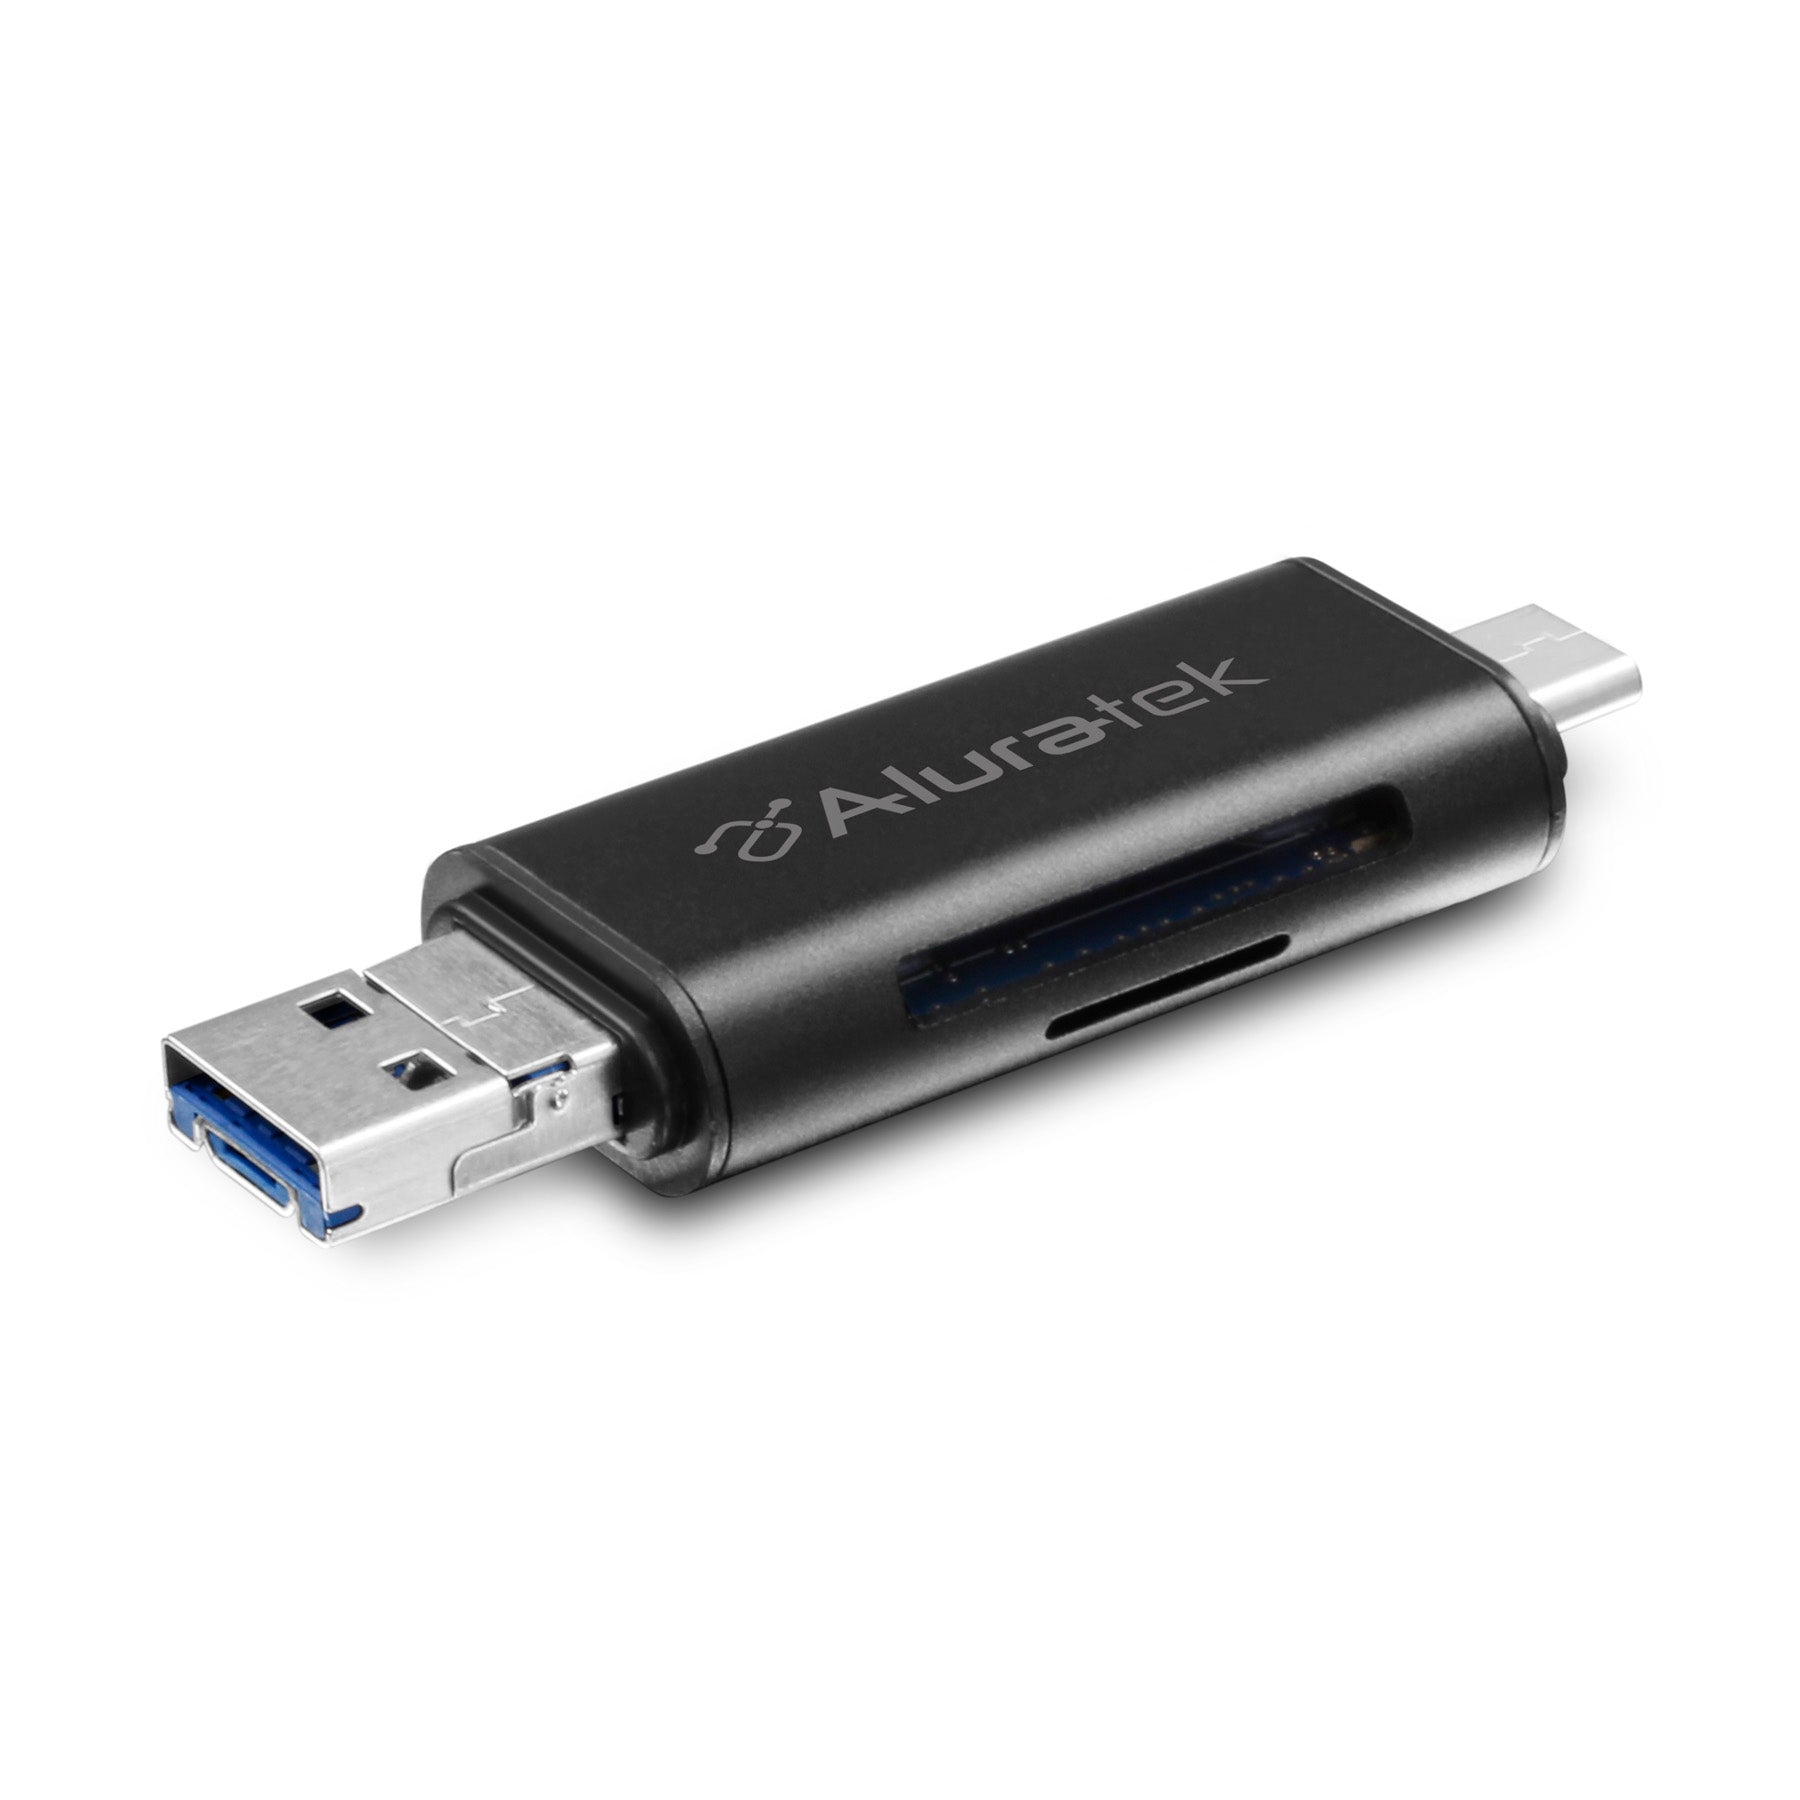 Udvikle Gooey Slid USB 3.1 / Type-C / Micro USB OTG (On-The-Go) SD and Micro SD Card Read